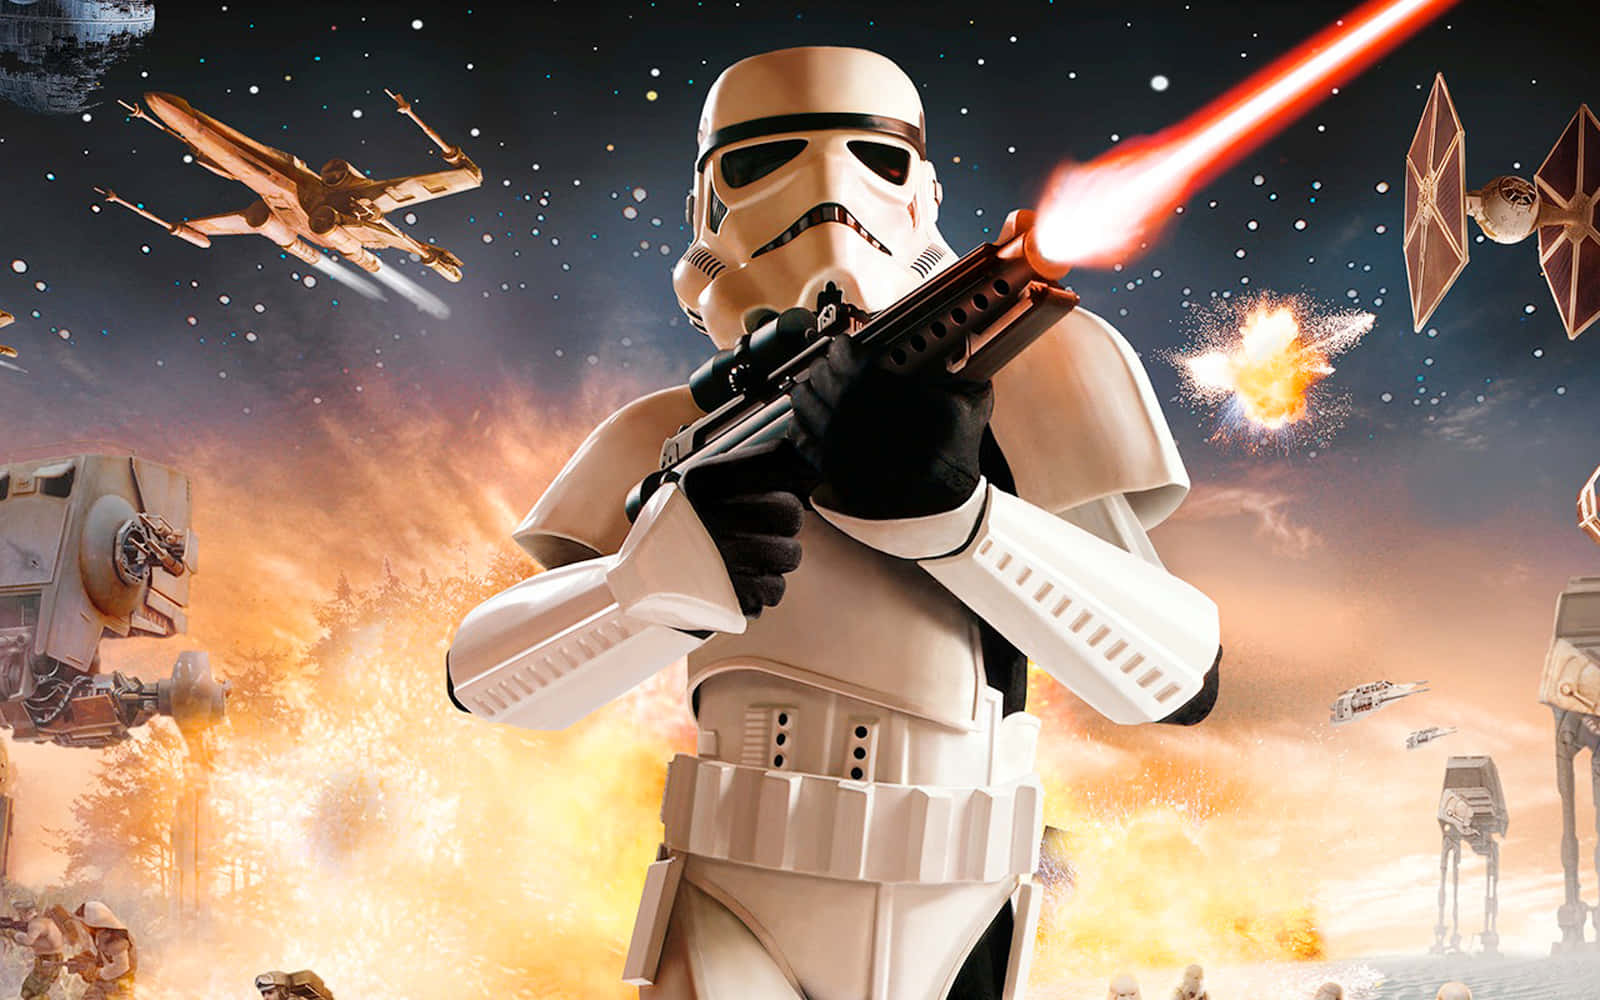 Imagende Un Stormtrooper De Star Wars Disparando Una Explosión.